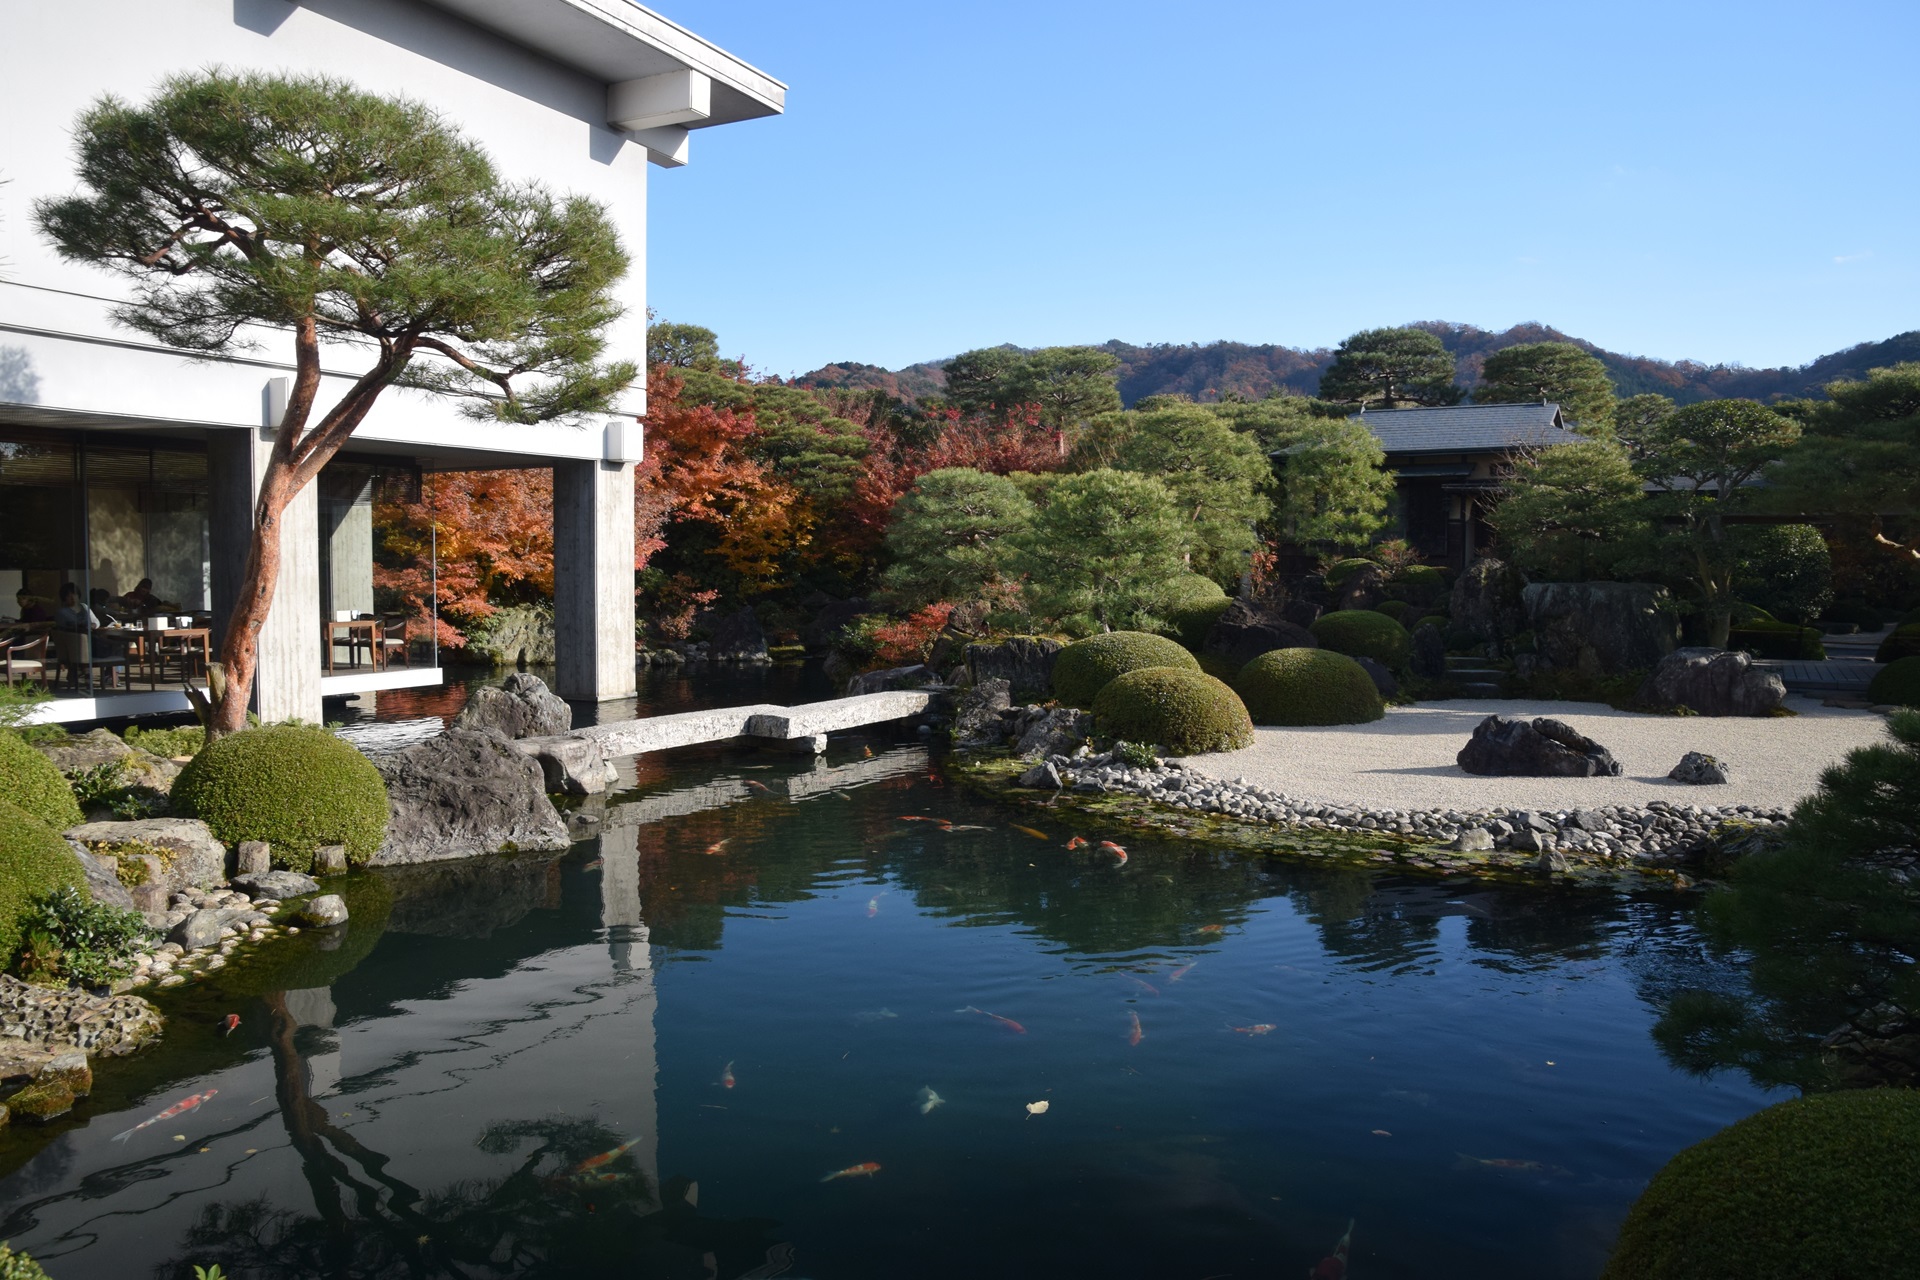 日本の風景 足立美術館の庭園2 壁紙19x1280 壁紙館